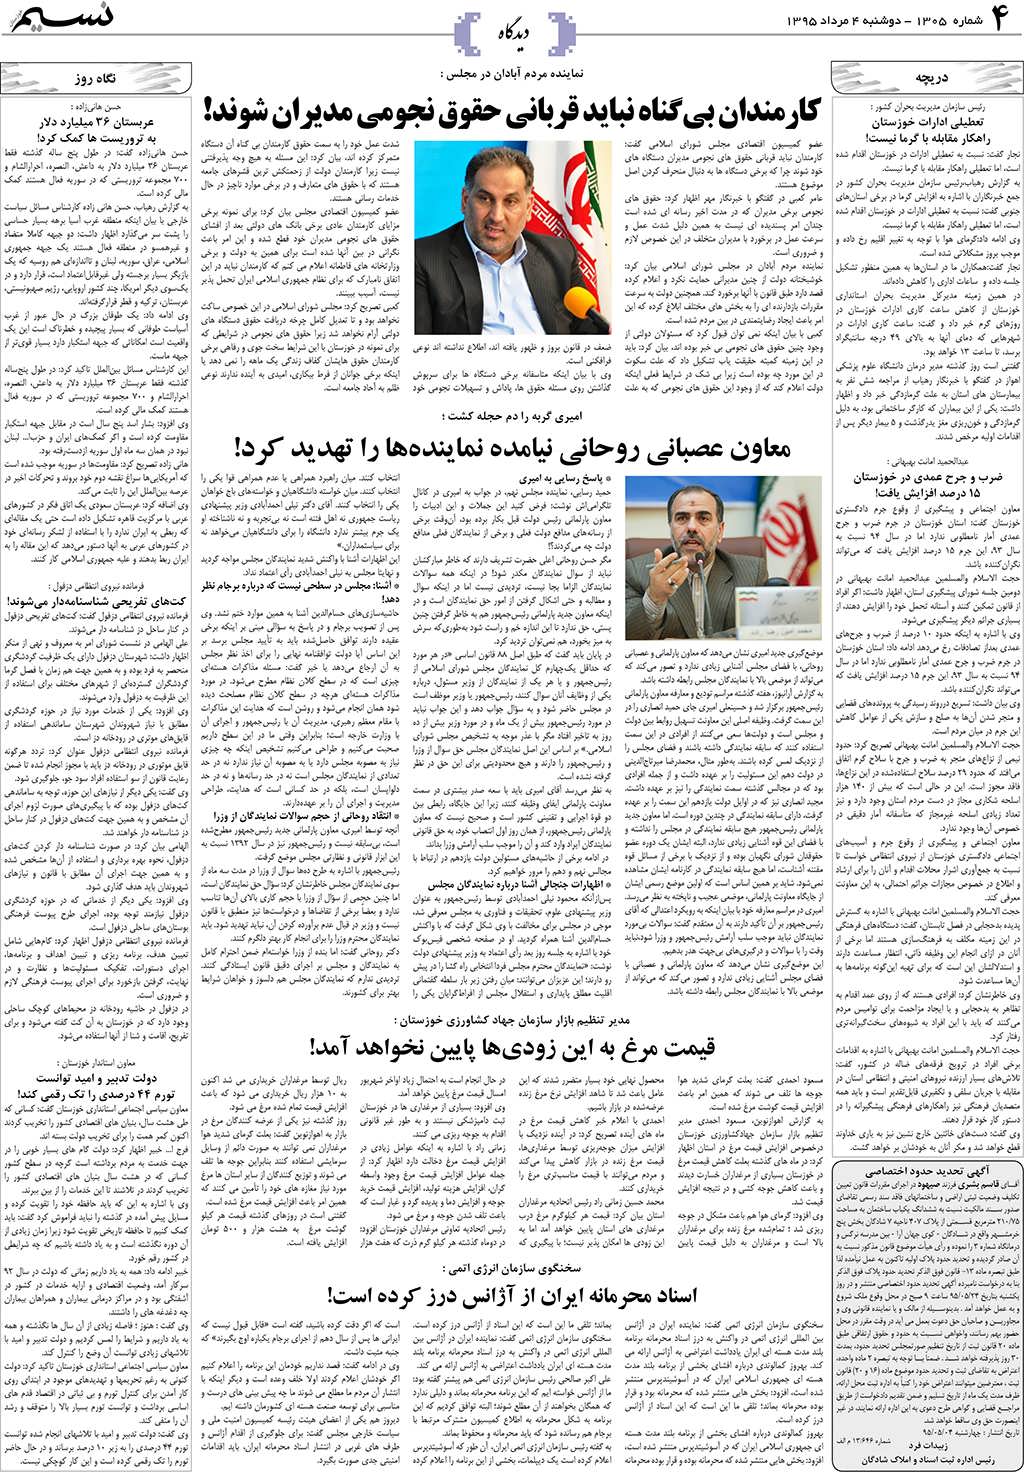 صفحه دیدگاه روزنامه نسیم شماره 1305